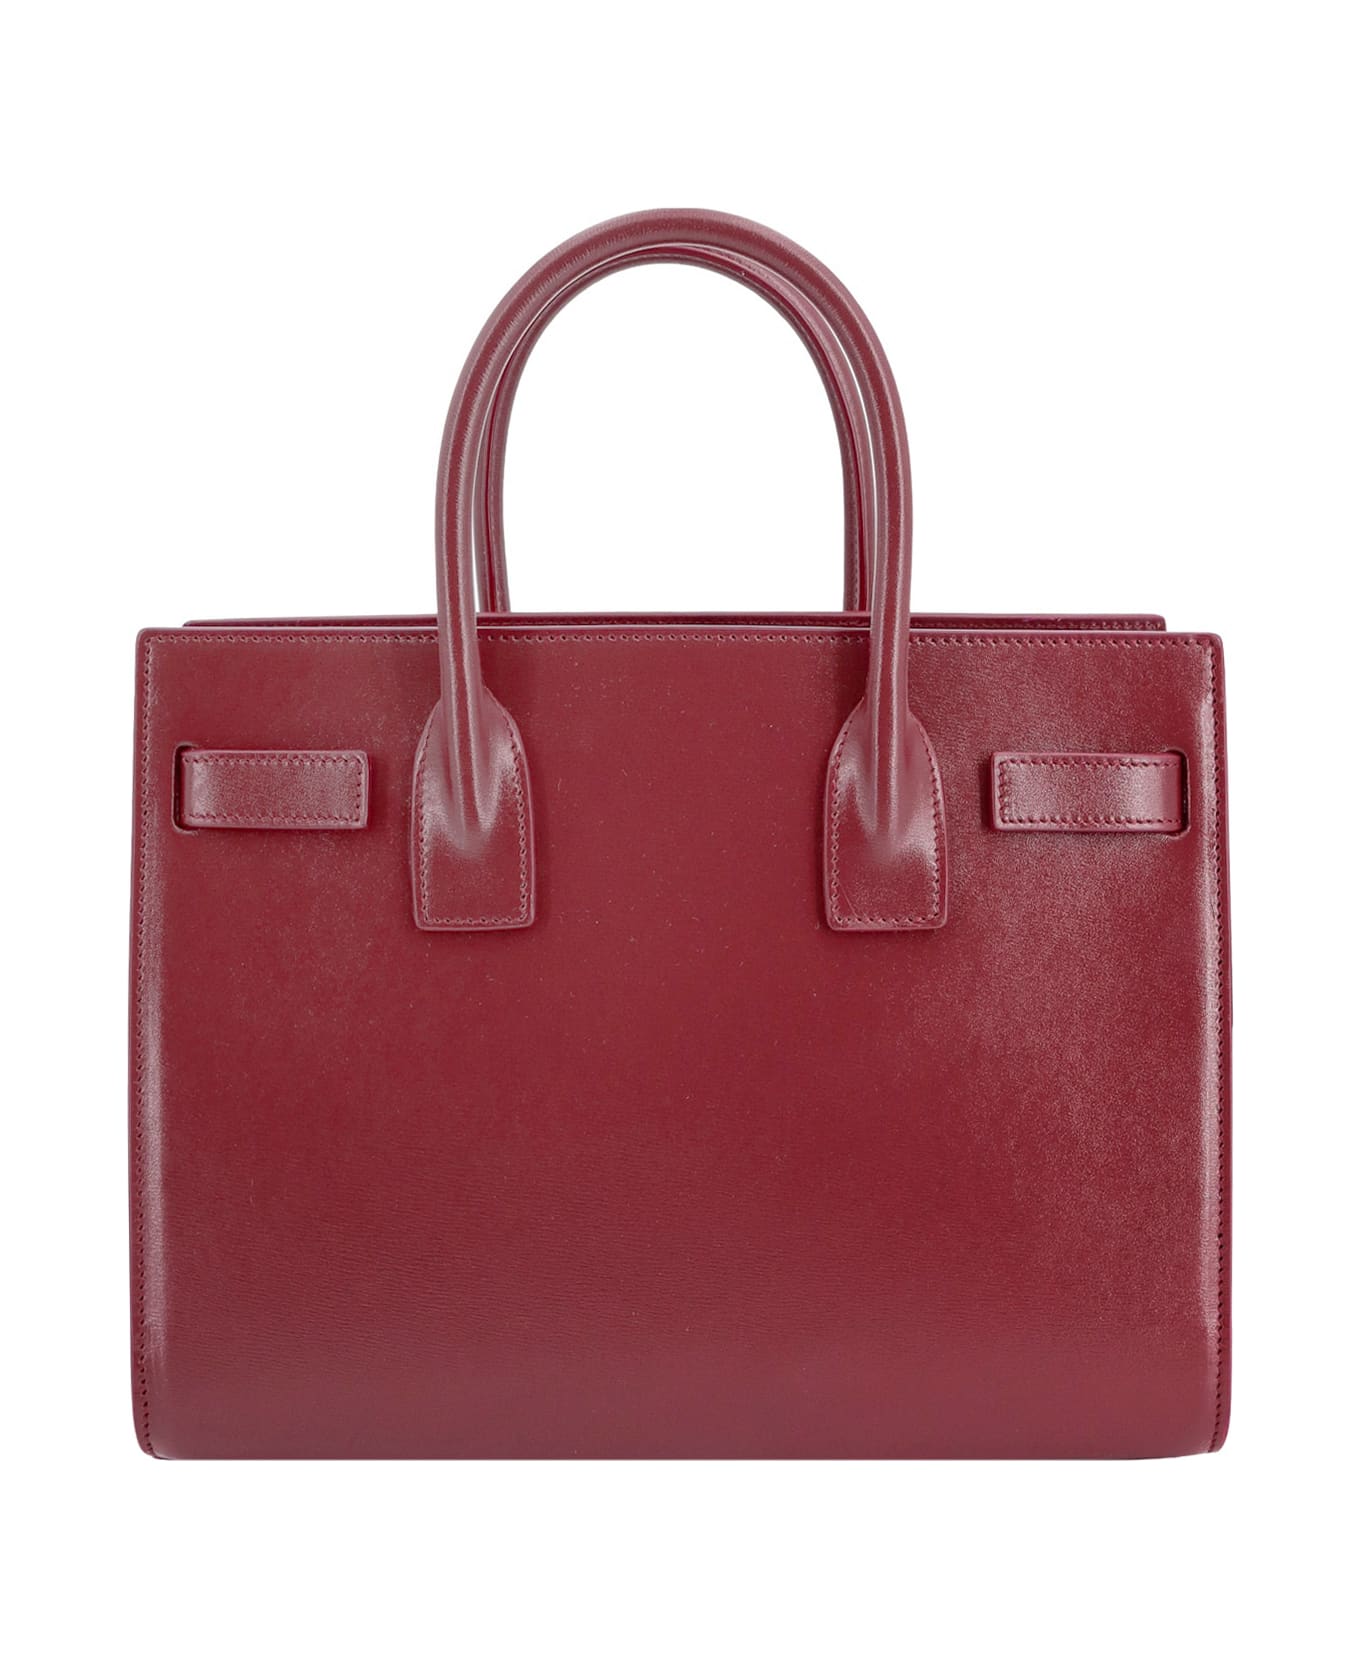 Saint Laurent Sac De Jour Baby Handbag - Red